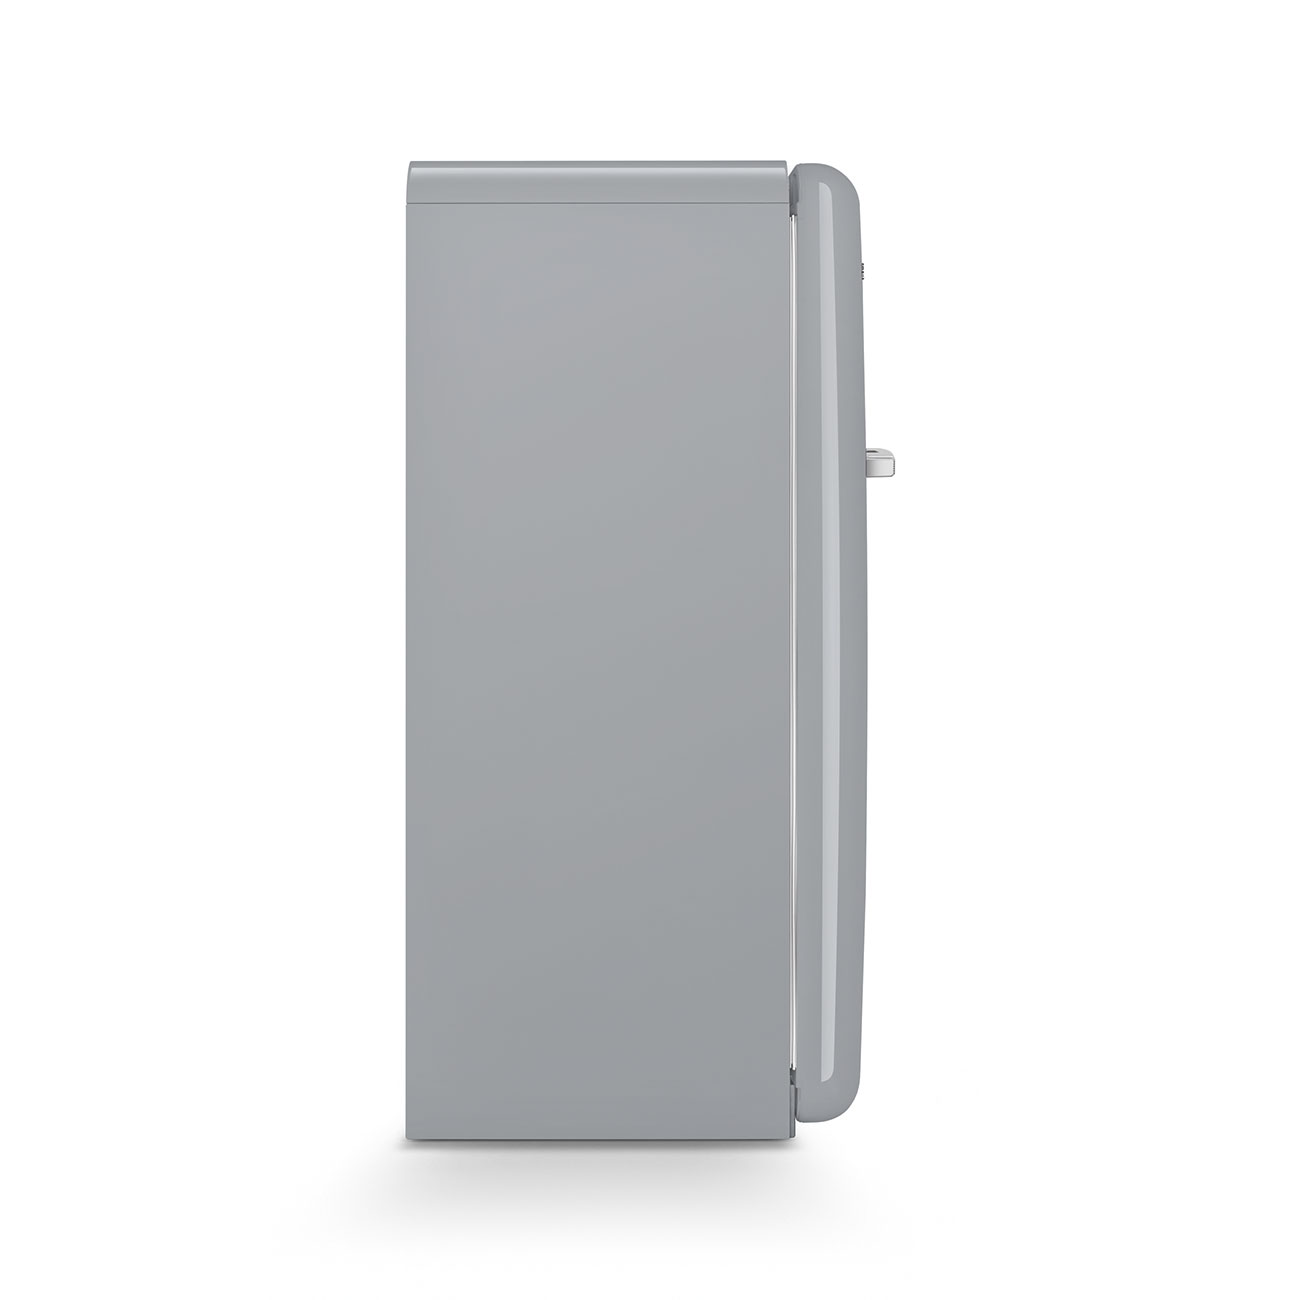 Silver refrigerator - Smeg_6